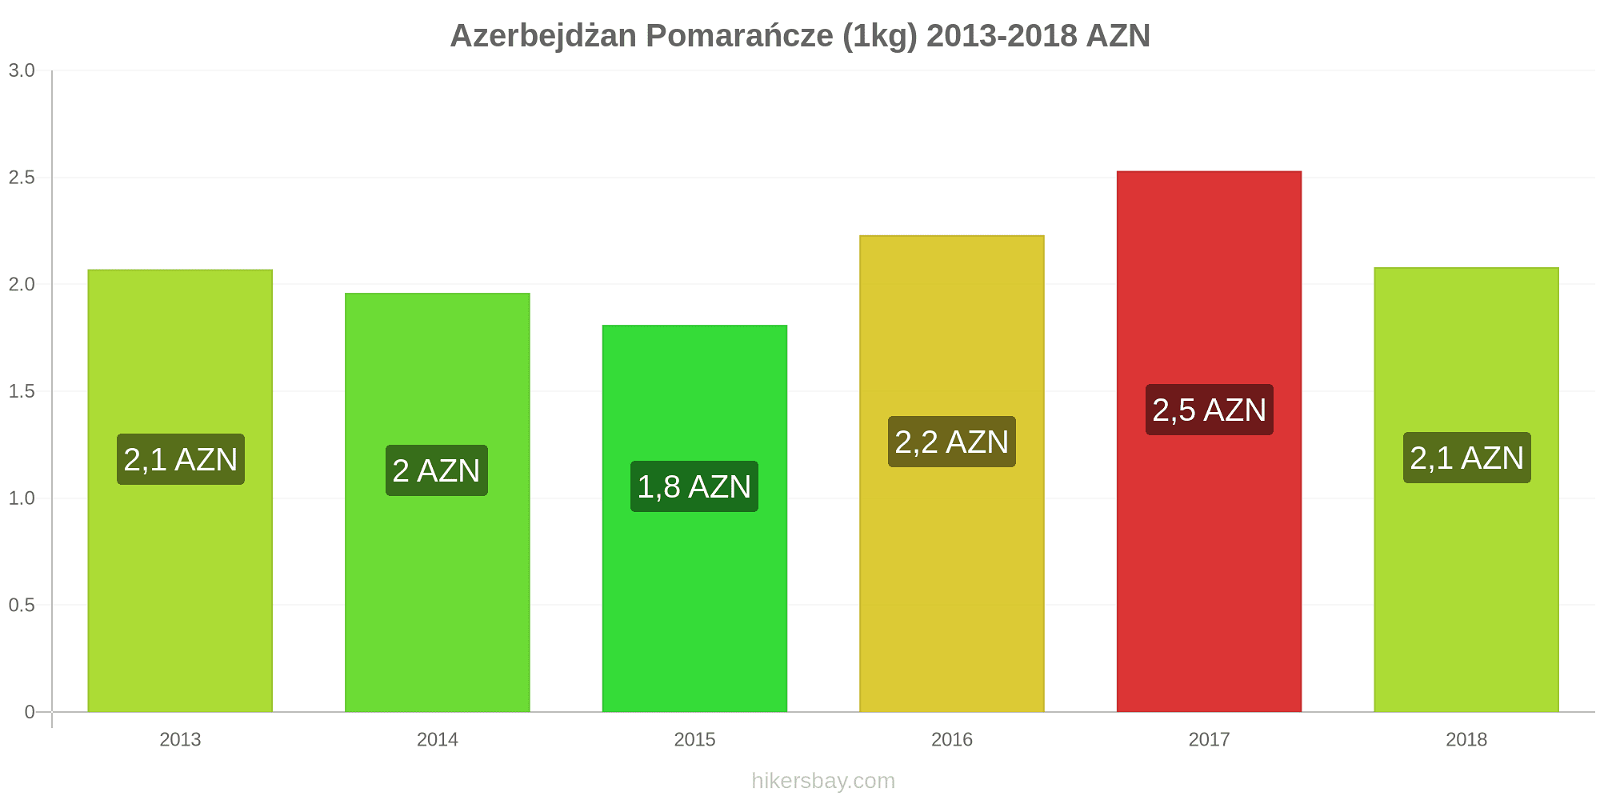 Azerbejdżan zmiany cen Pomarańcze (1kg) hikersbay.com